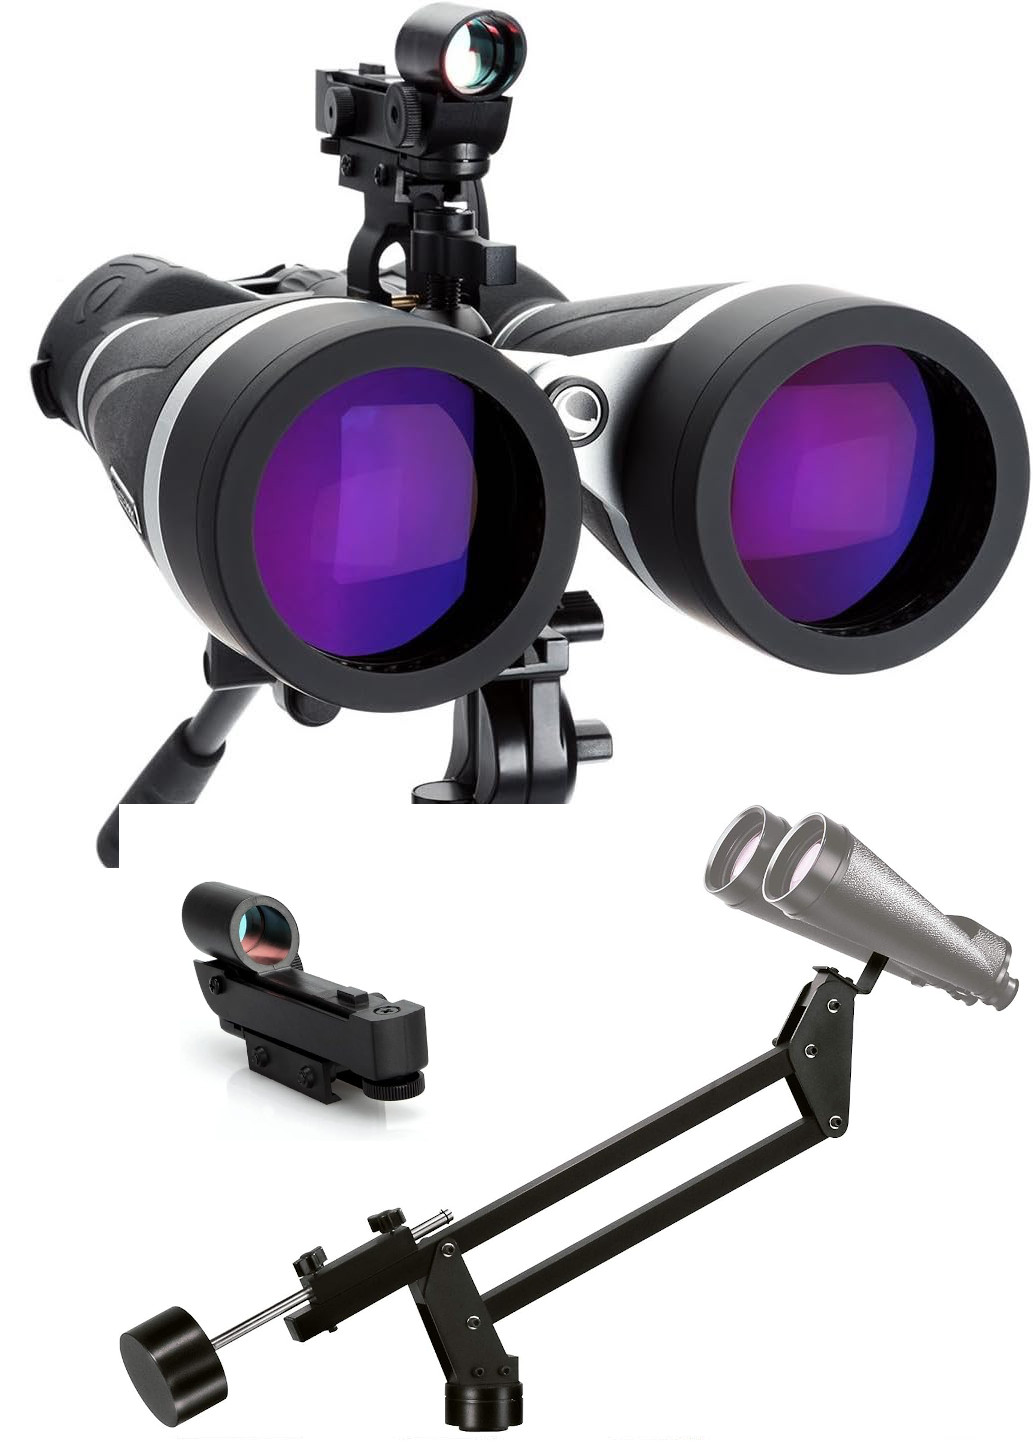 Celesctron Binoculars